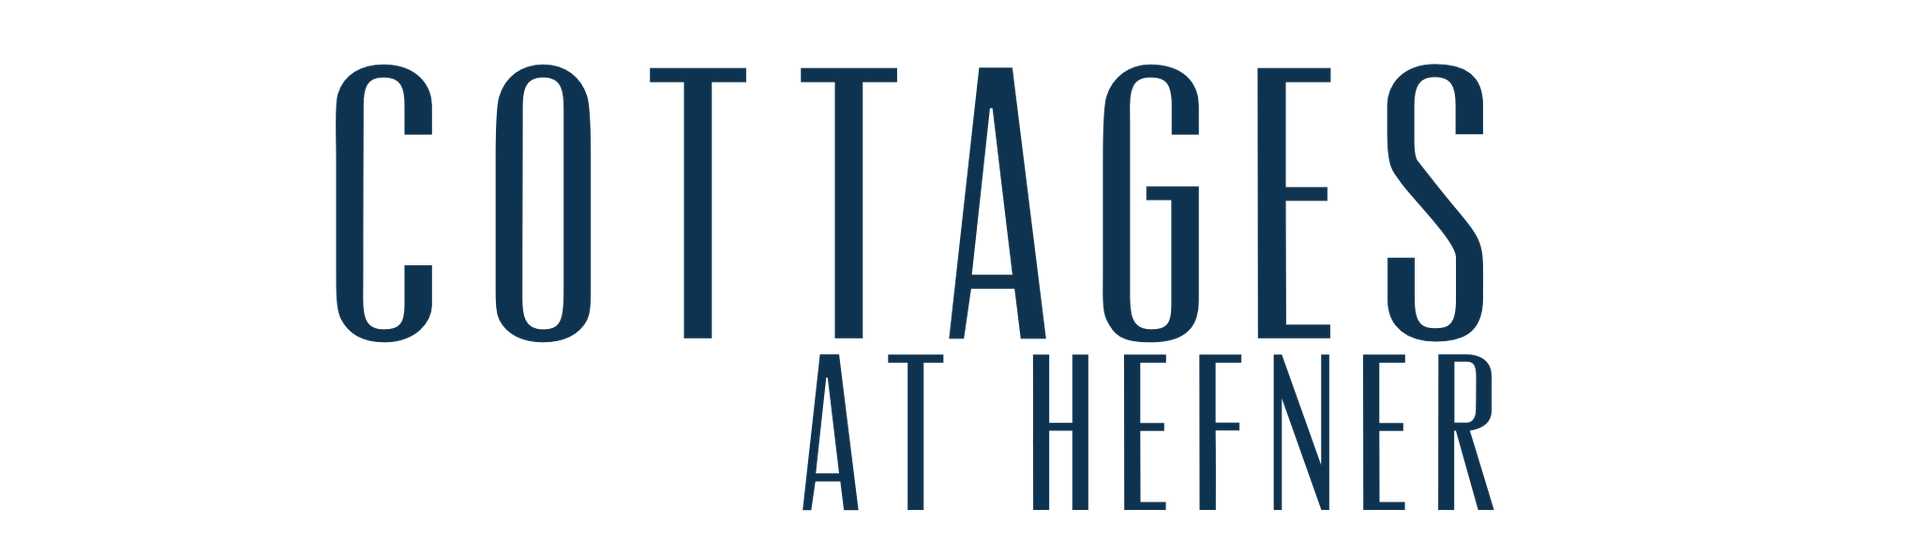 Cottages at hefner logo